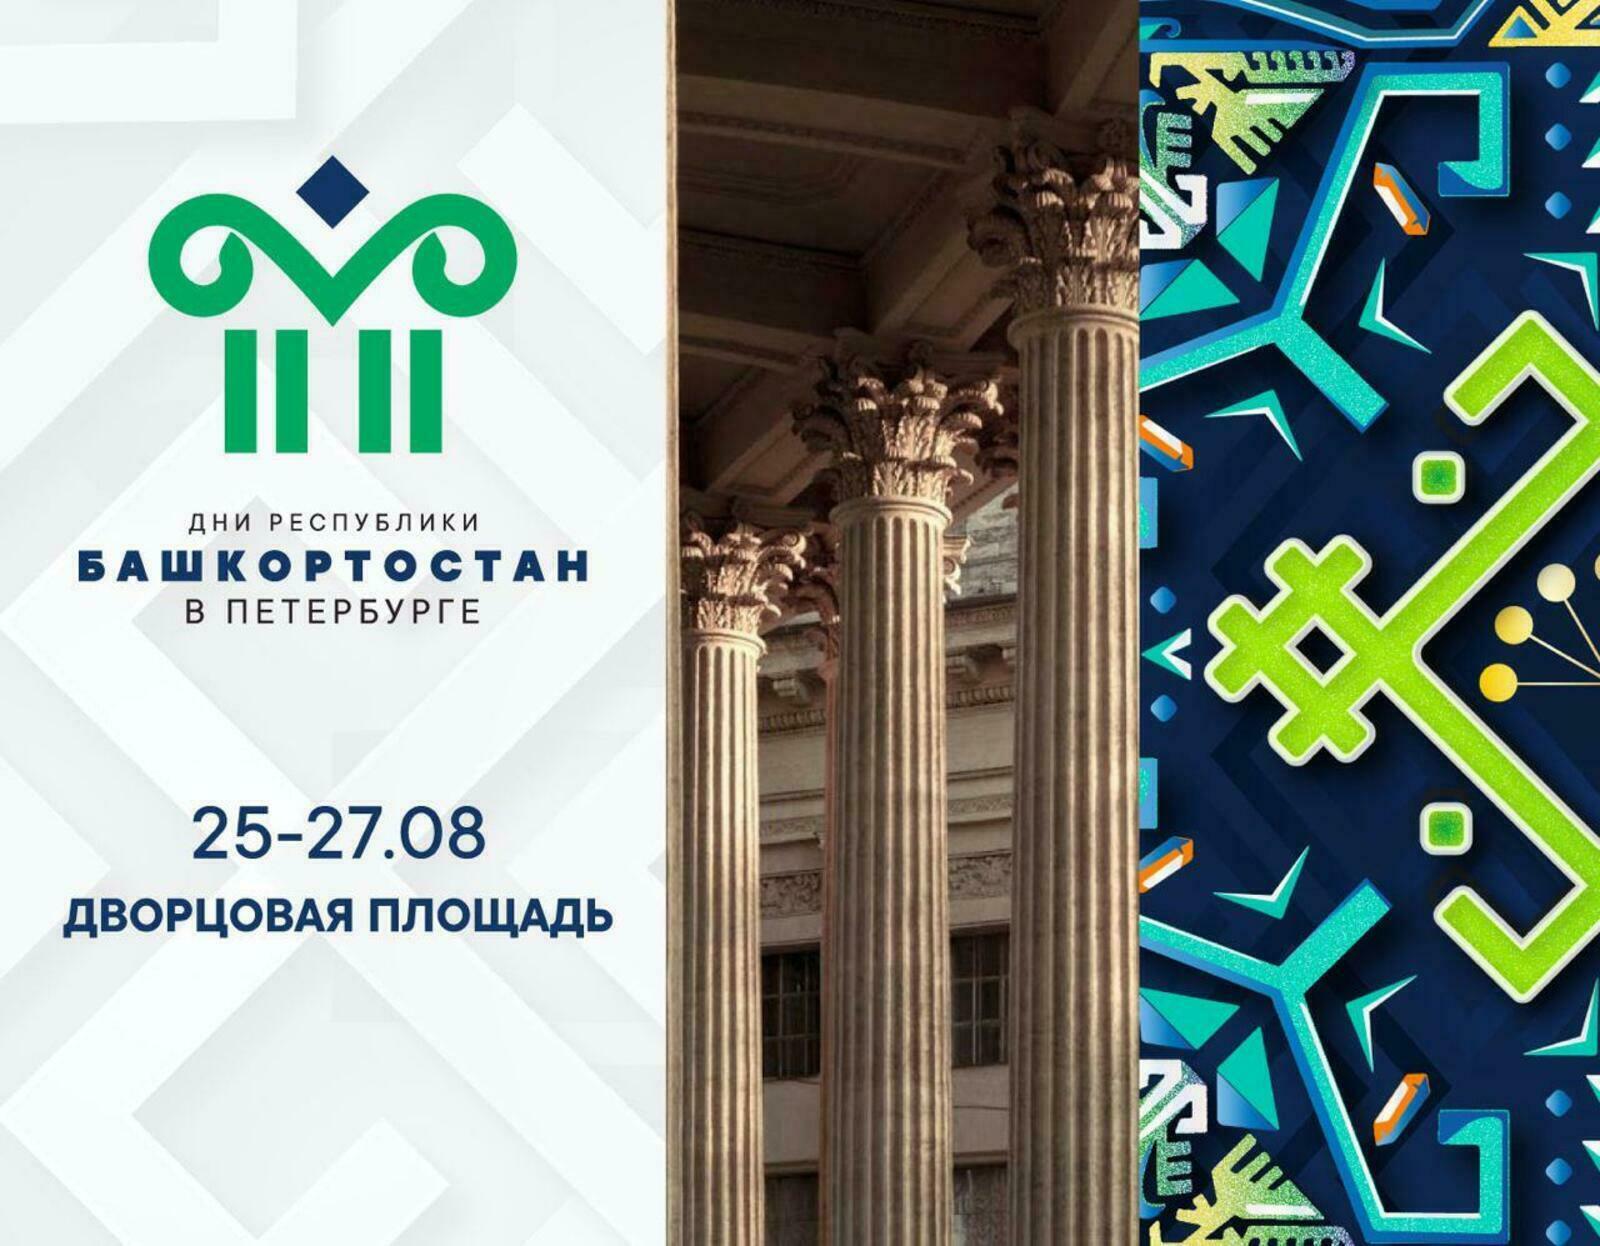 Башкортостан представит свои туристические возможности на Днях республики в Санкт-Петербурге